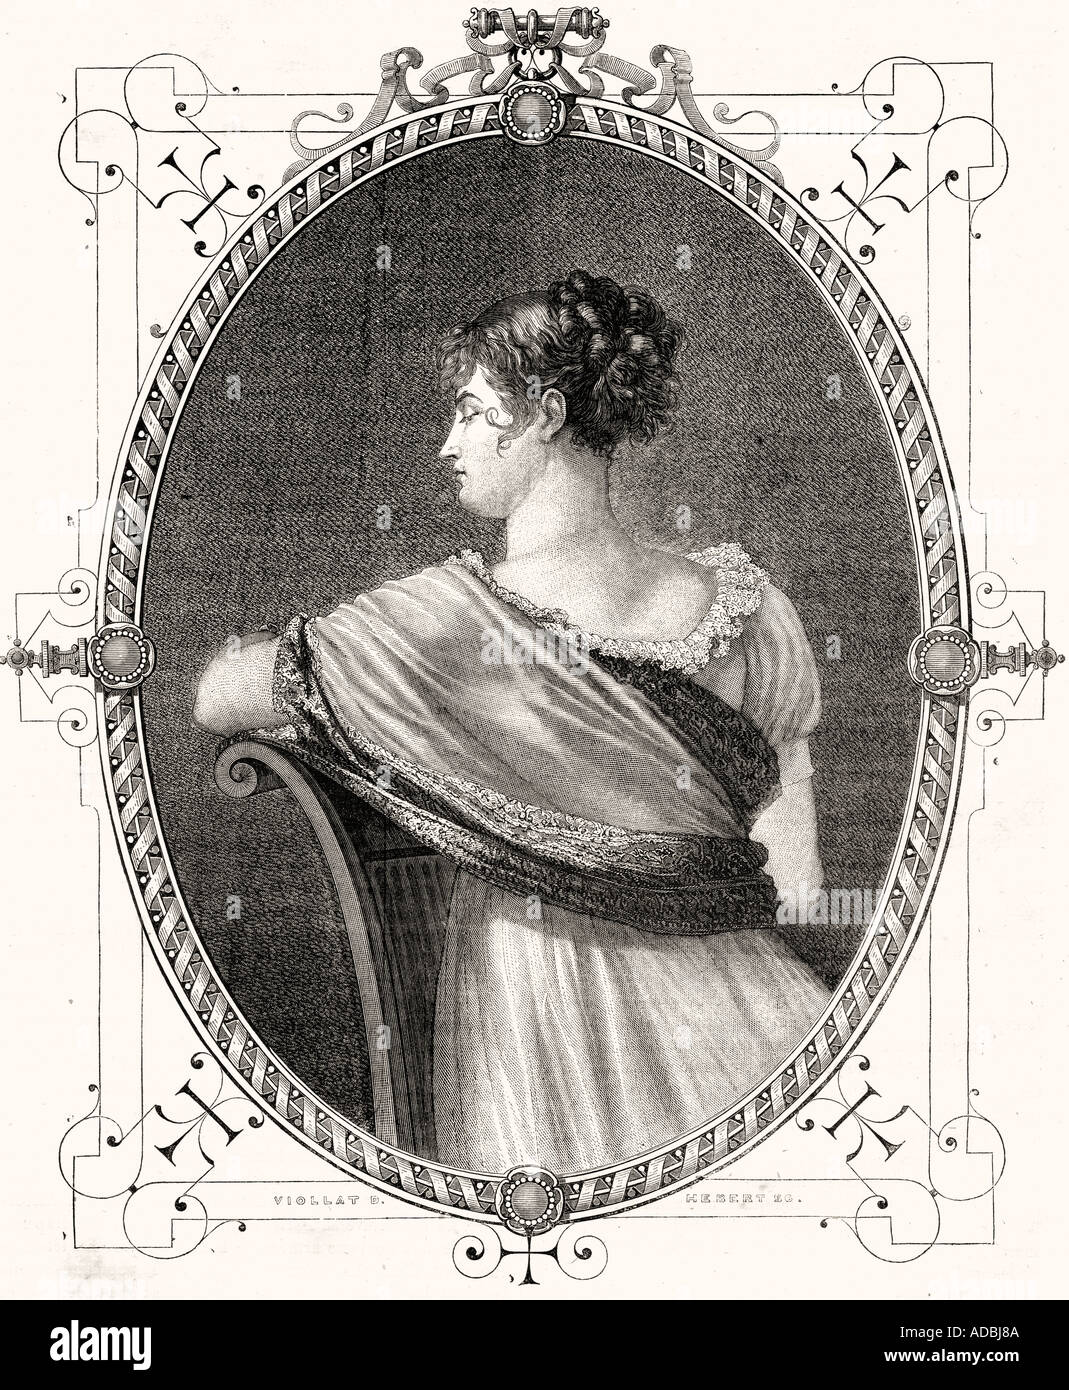 Jeanne Françoise Jullie Adélaïde Récamier, wie Juliette, 1777 - 1849. Bekannte französische Schönheit. Stockfoto